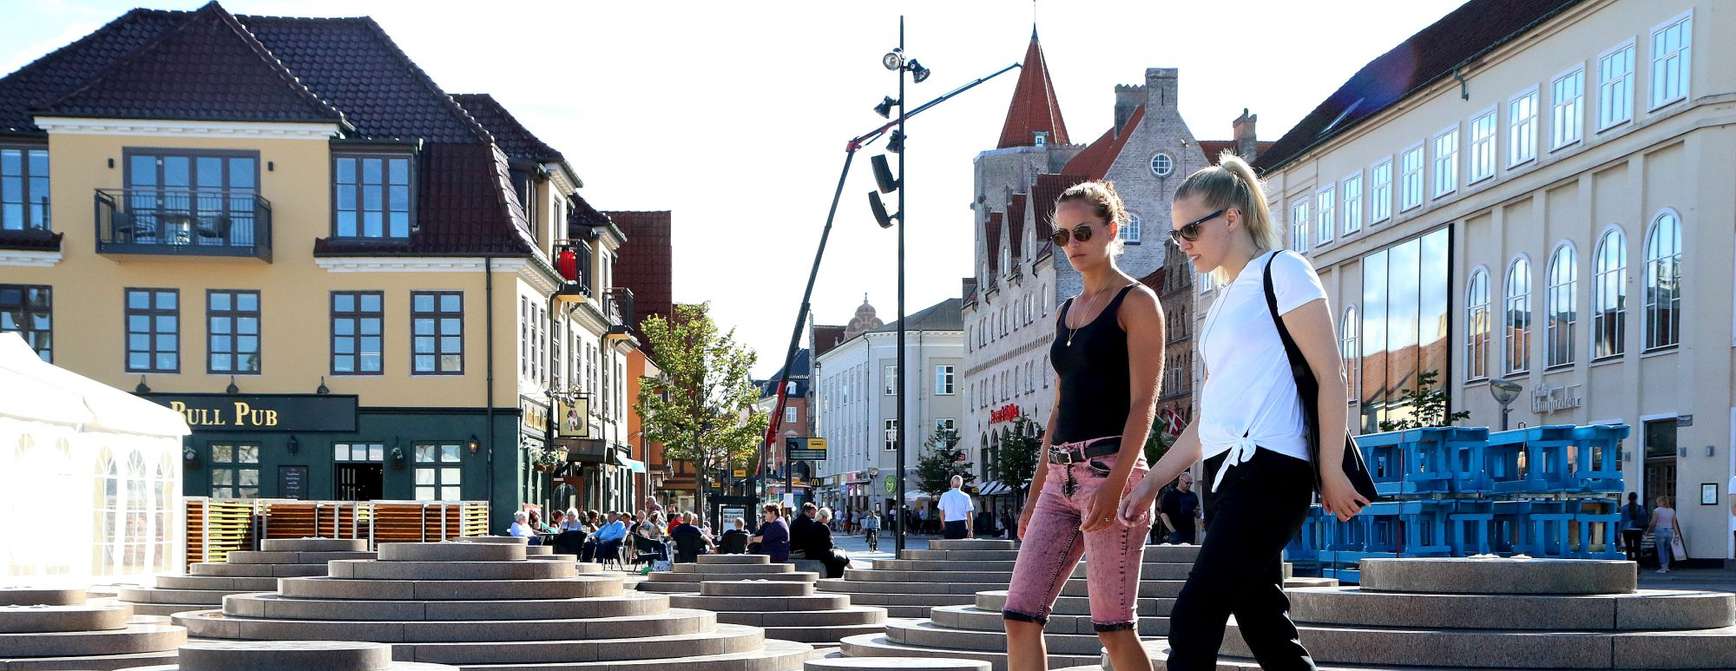 Venninner nyter et trivelig bymiljø i Aalborg